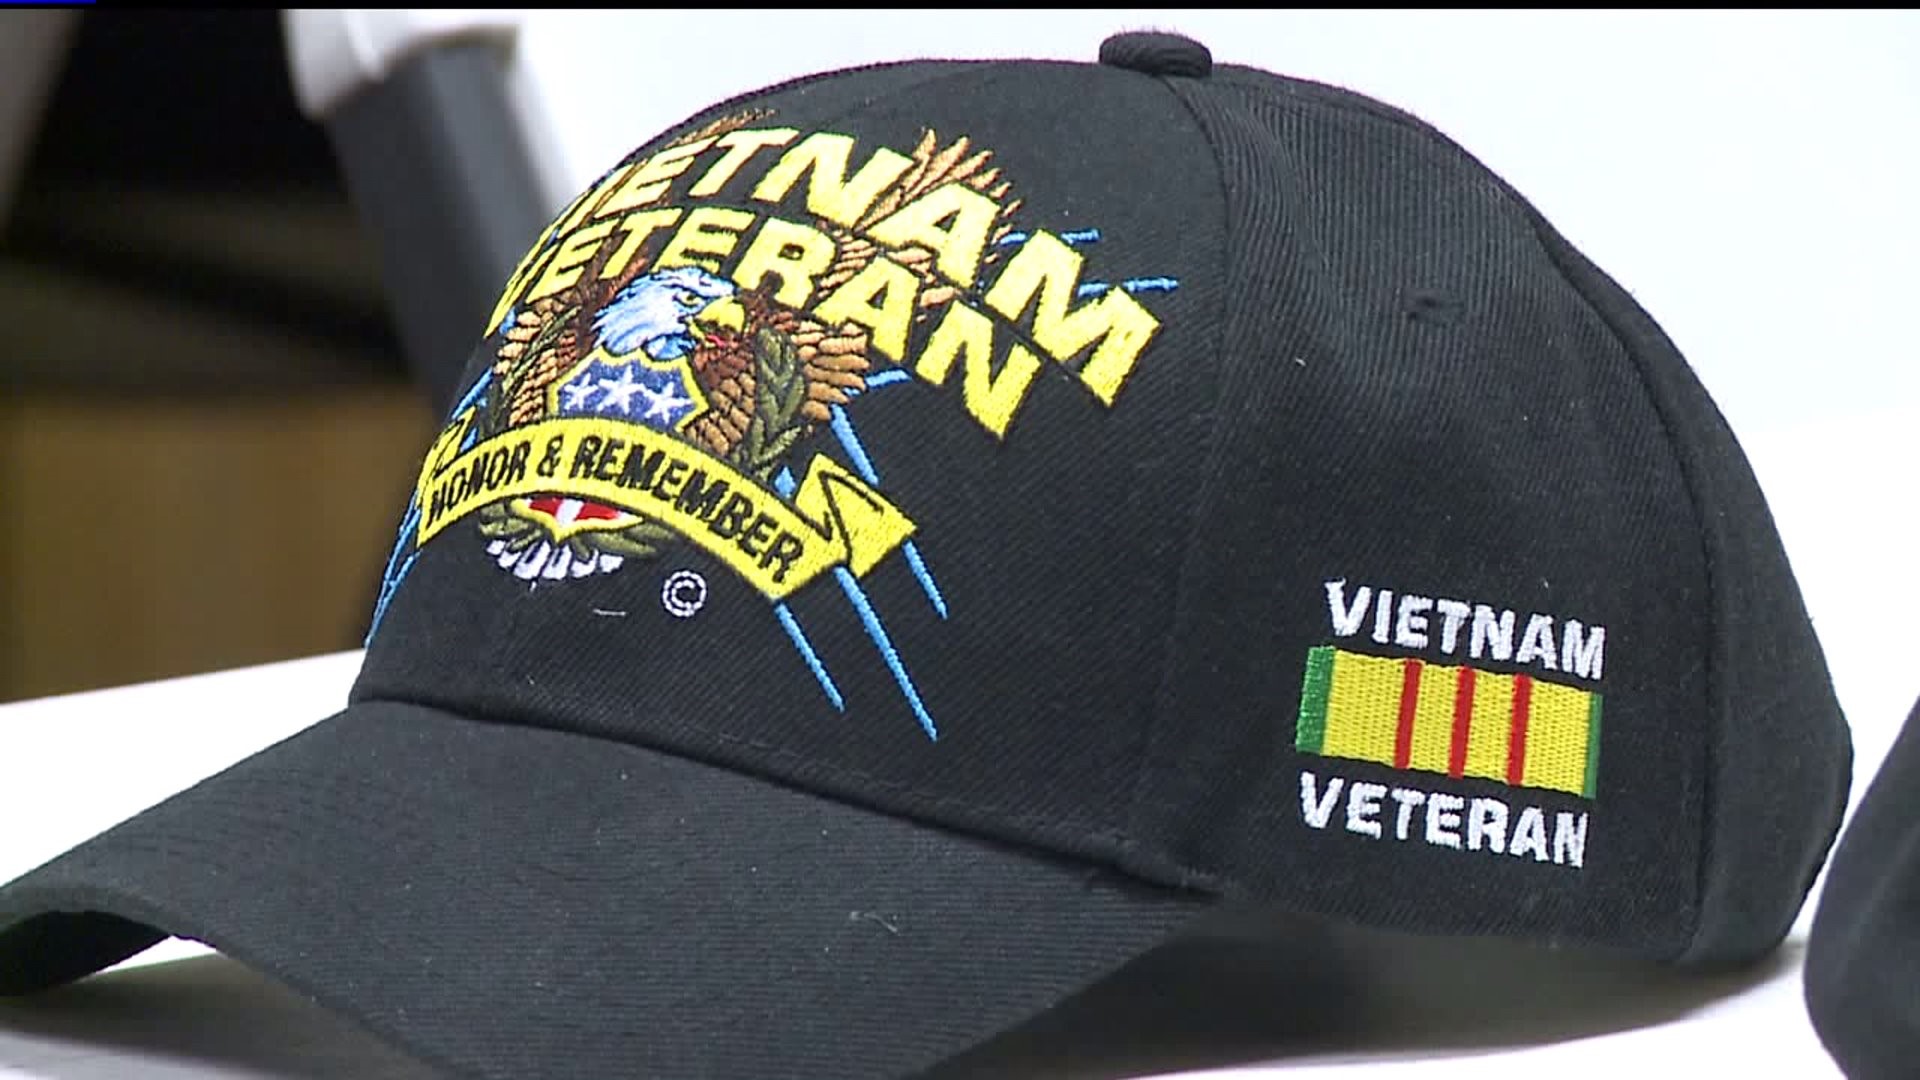 Veterans honoring fallen Vietnam Troops